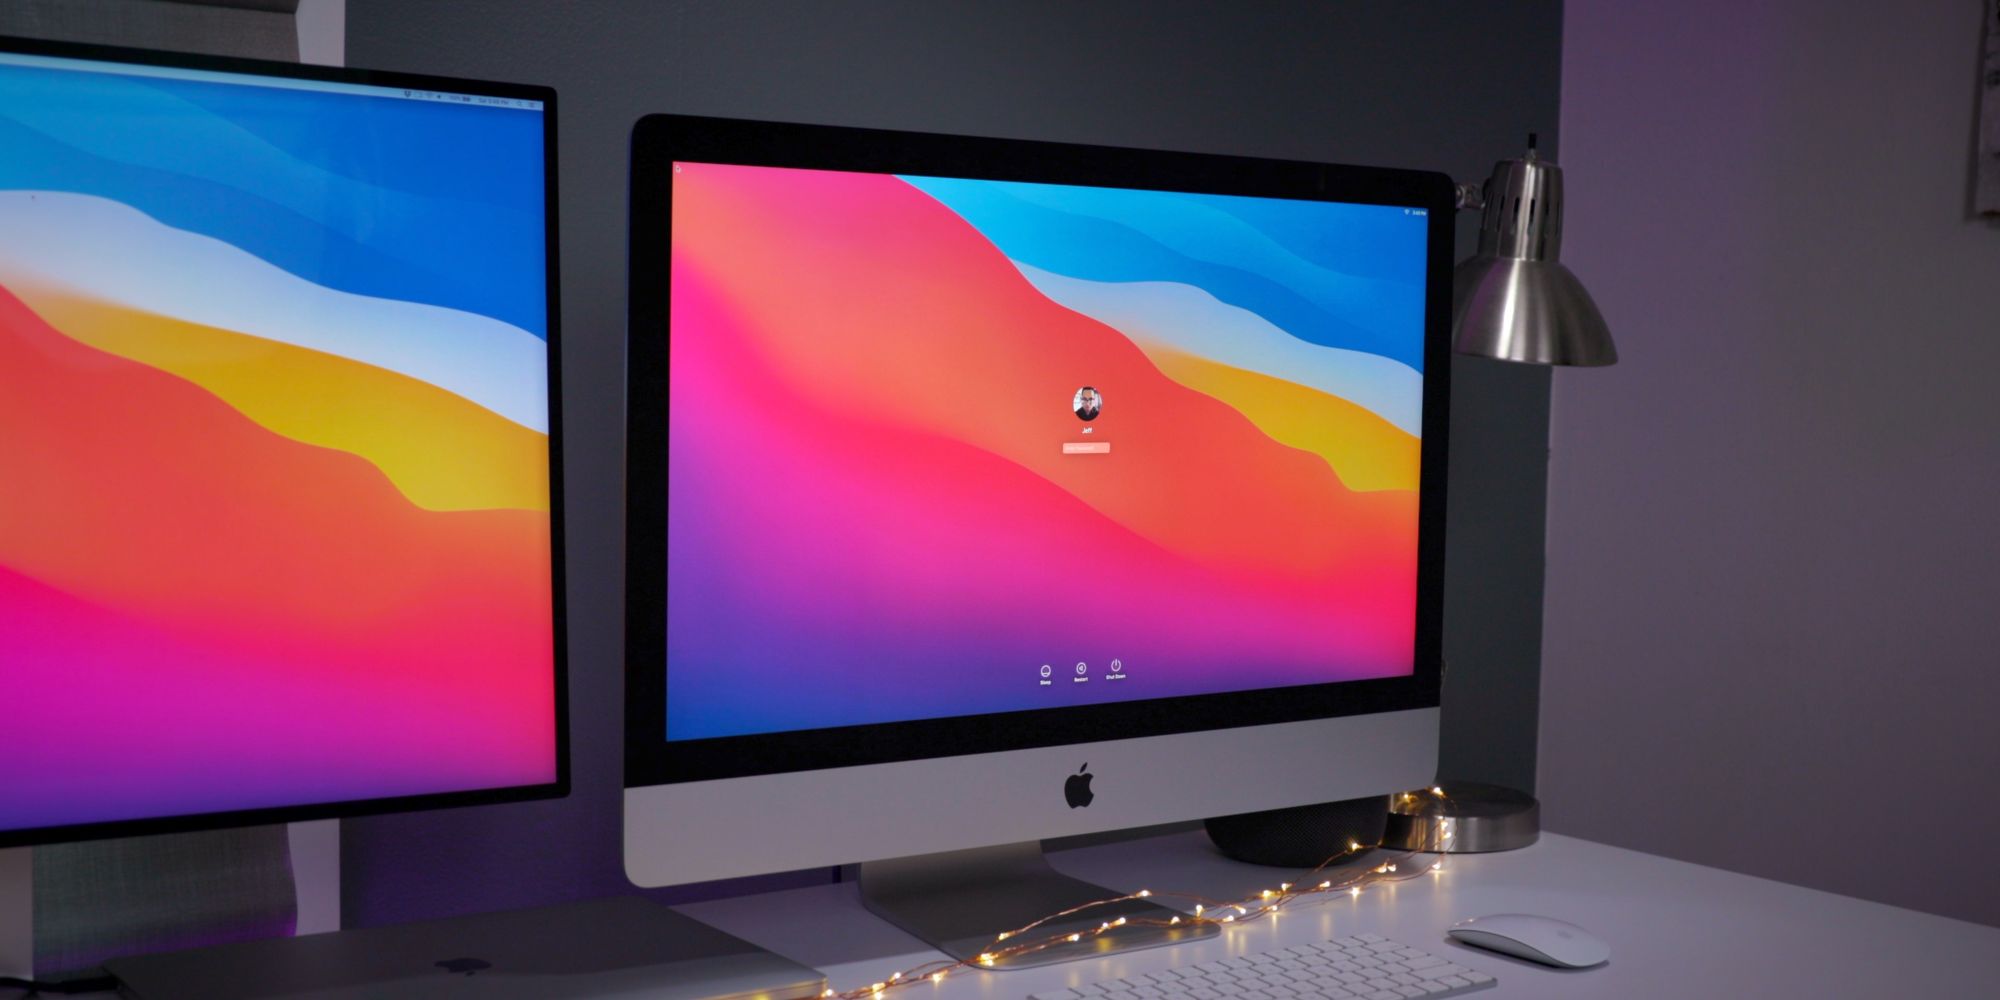 Apple убрала из продажи 27-дюймовый iMac из интернет-магазина